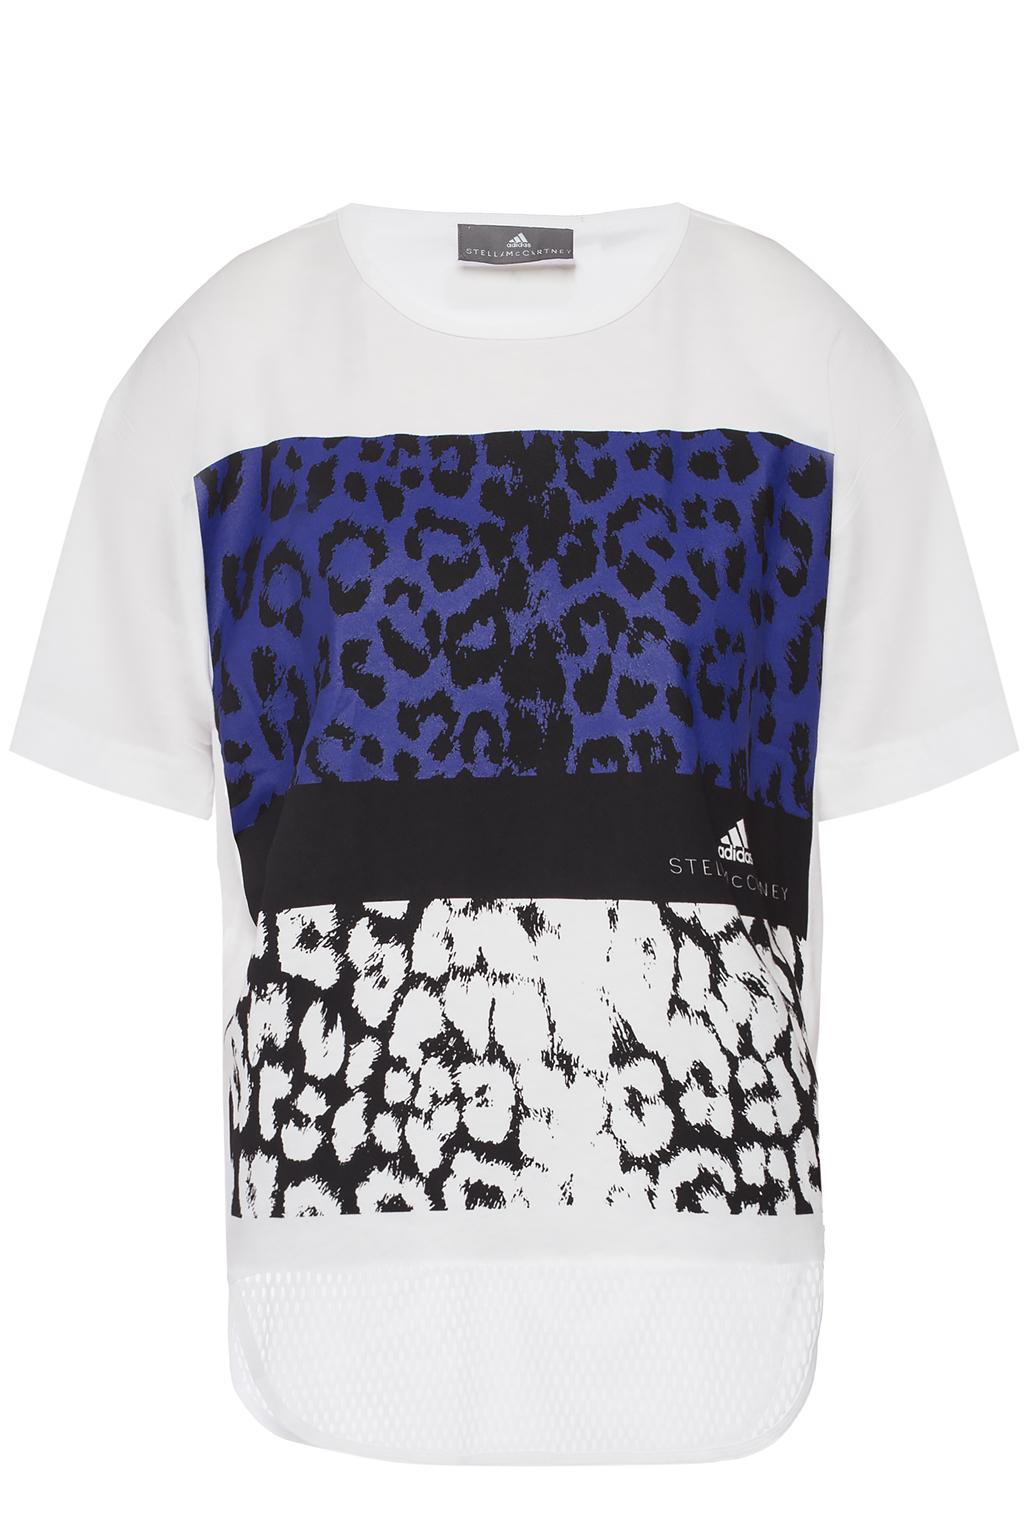 leopard adidas shirt